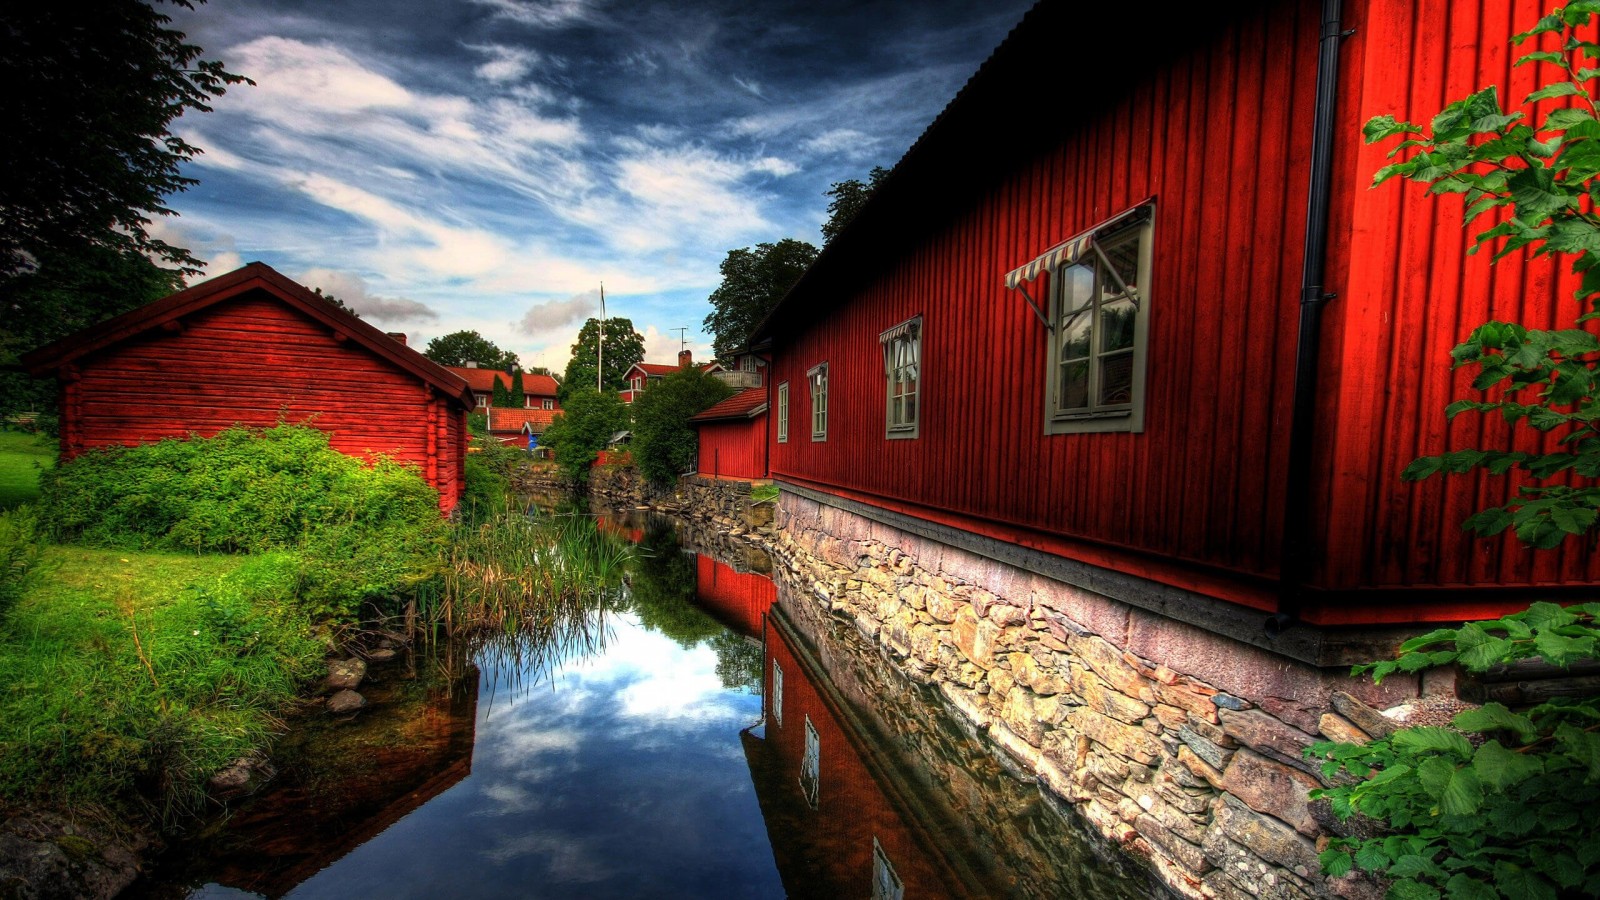 Red Village, Norberg, Sweden Wallpaper for Desktop 1600x900